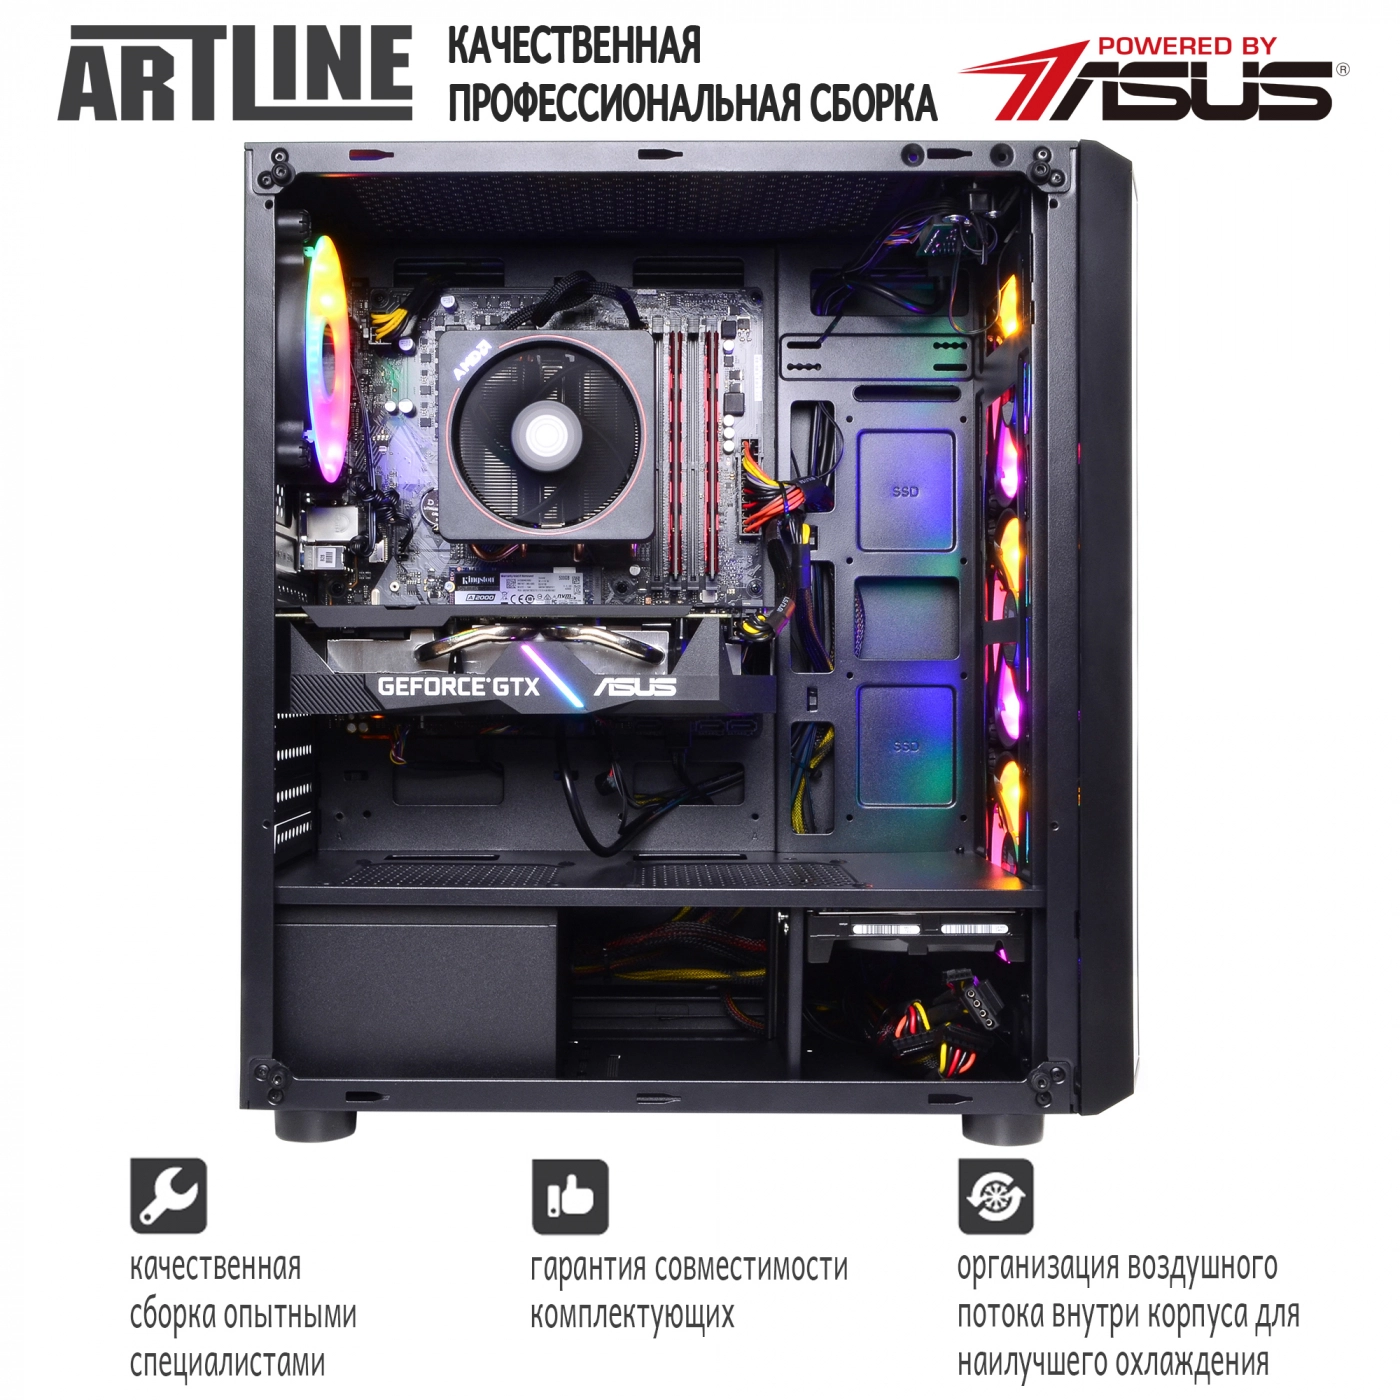 Купить Компьютер ARTLINE Gaming X86v01 - фото 9